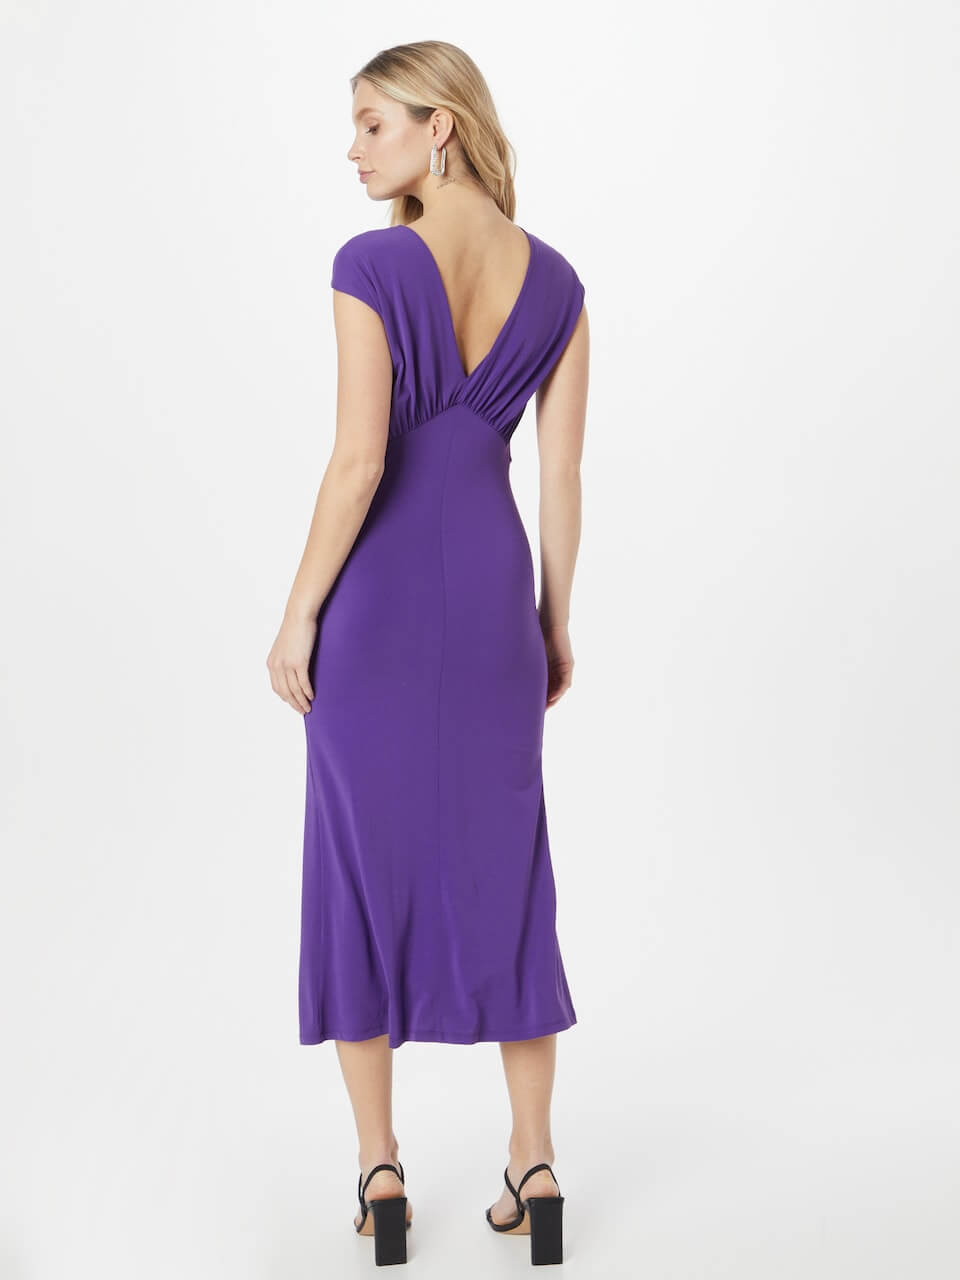 Sexy Violet Dress | Patrizia Pepe